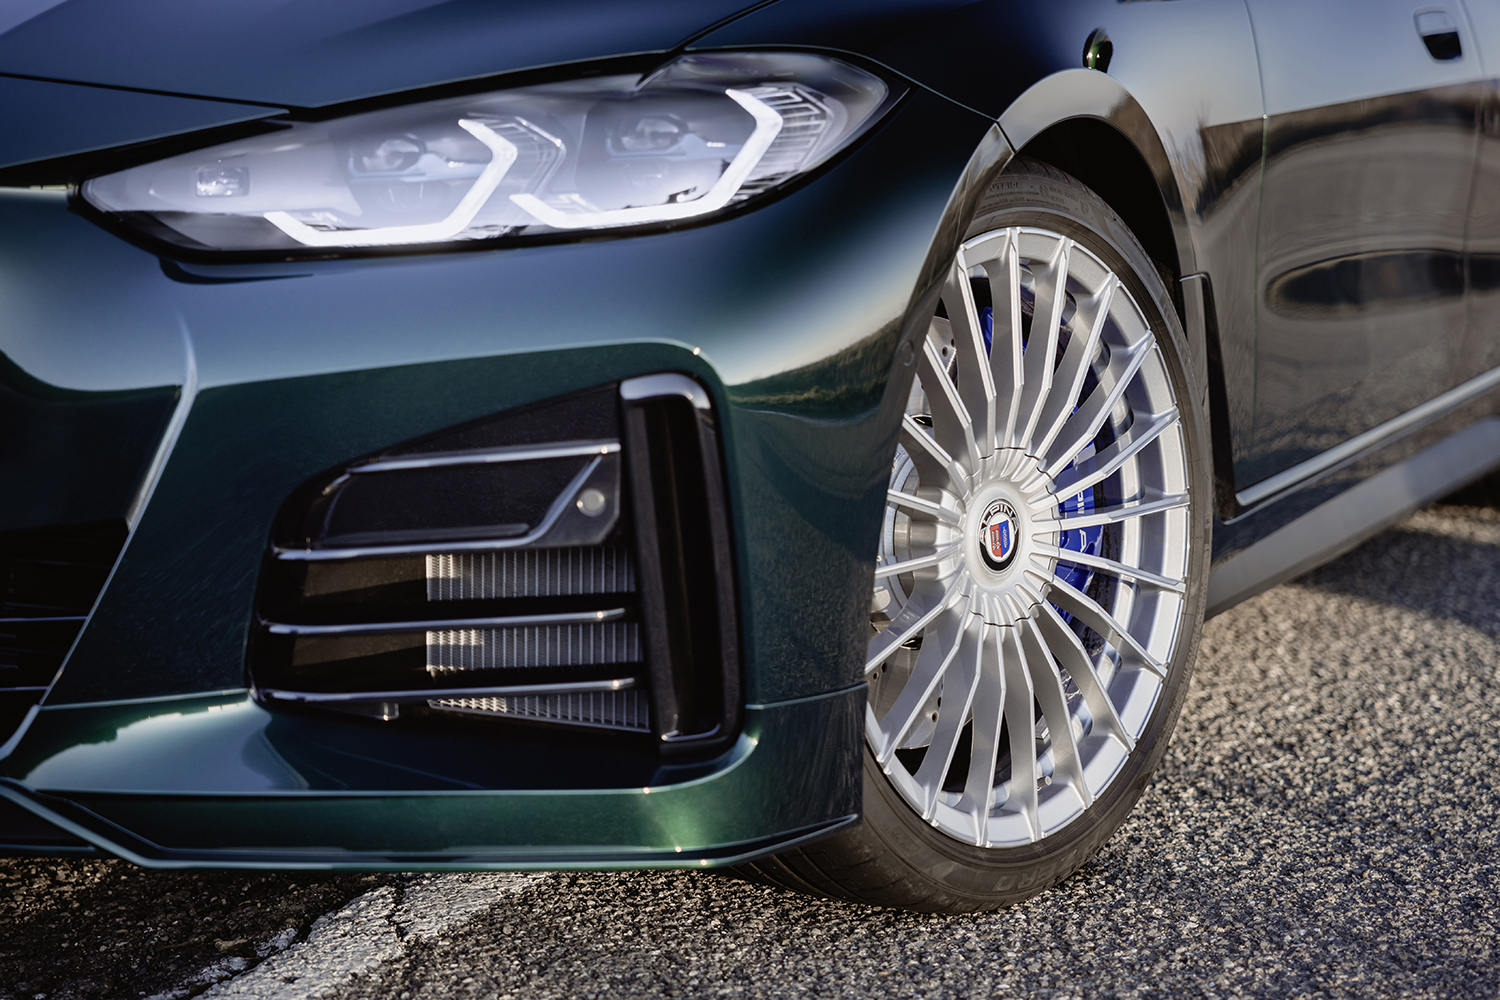 BMWアルピナD4 S グランクーペの写真